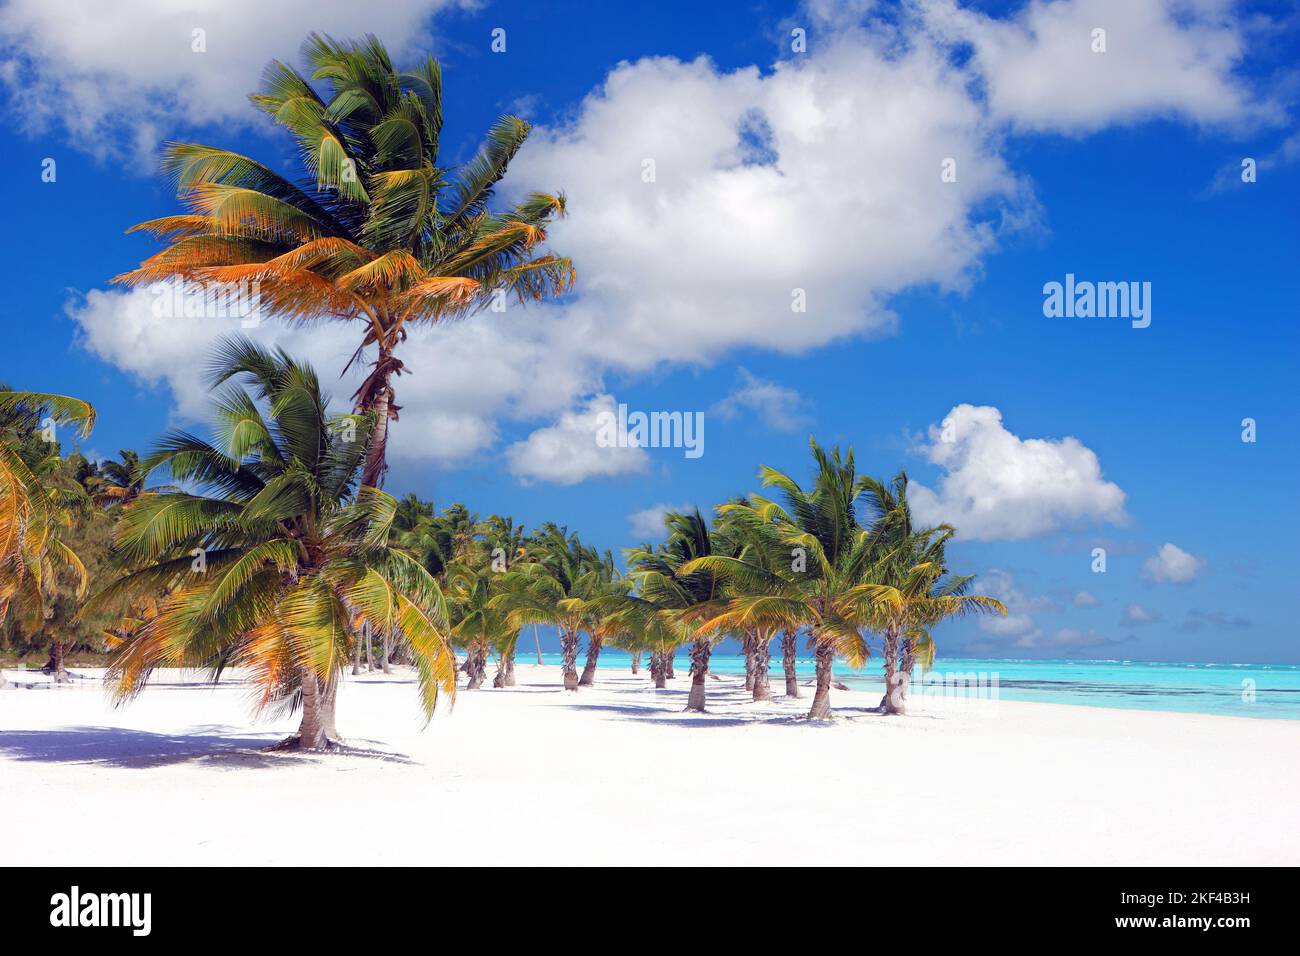 Kokospalmen am Sandstrand BEI Punta Cana, Dominikanische Republik, Karibik - palmiers à la noix de coco à la plage près de Punta Cana, République dominicaine, Caraïbes Banque D'Images